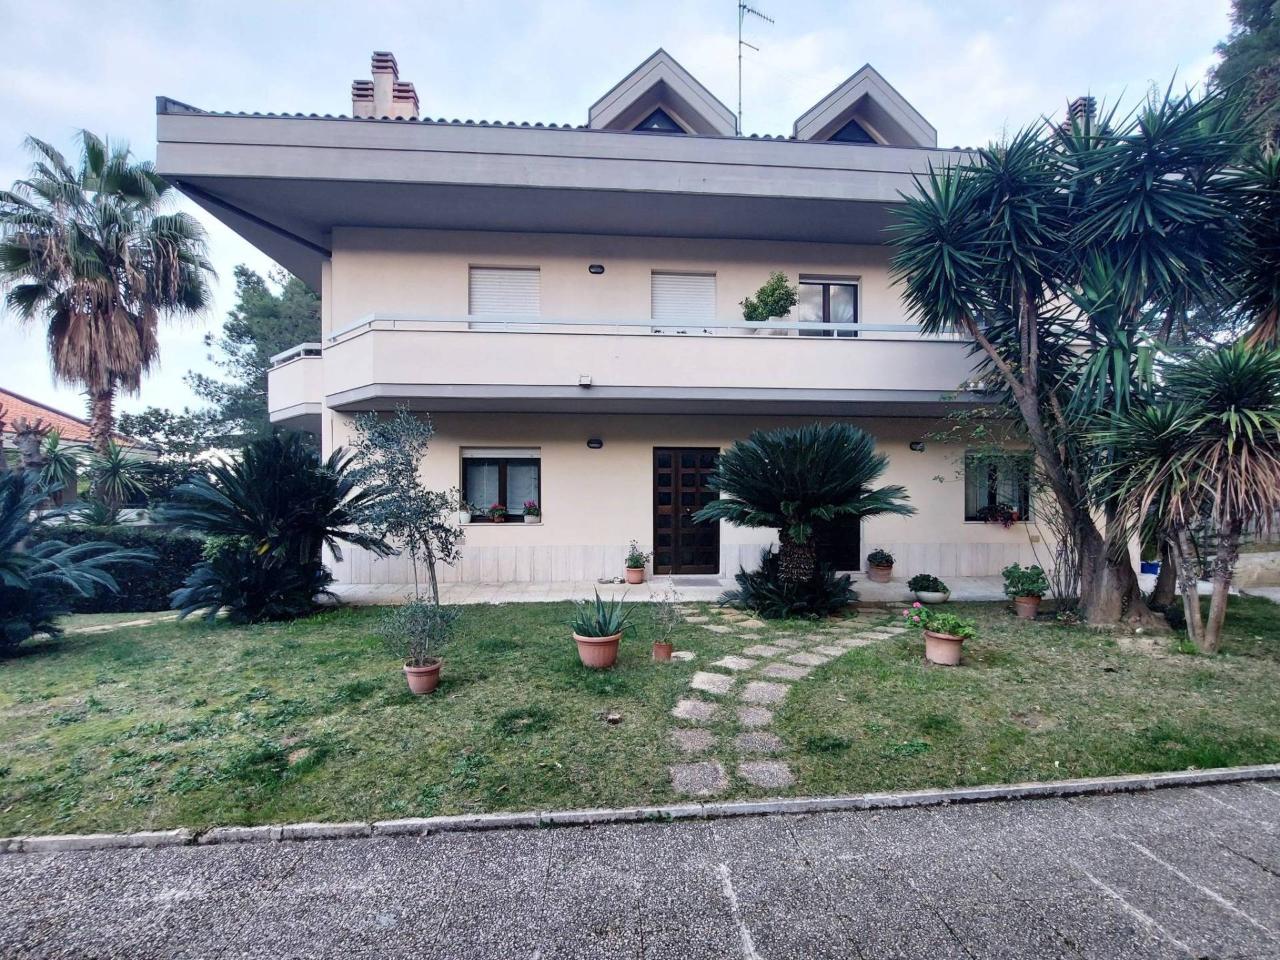 Villa in vendita a Montesilvano